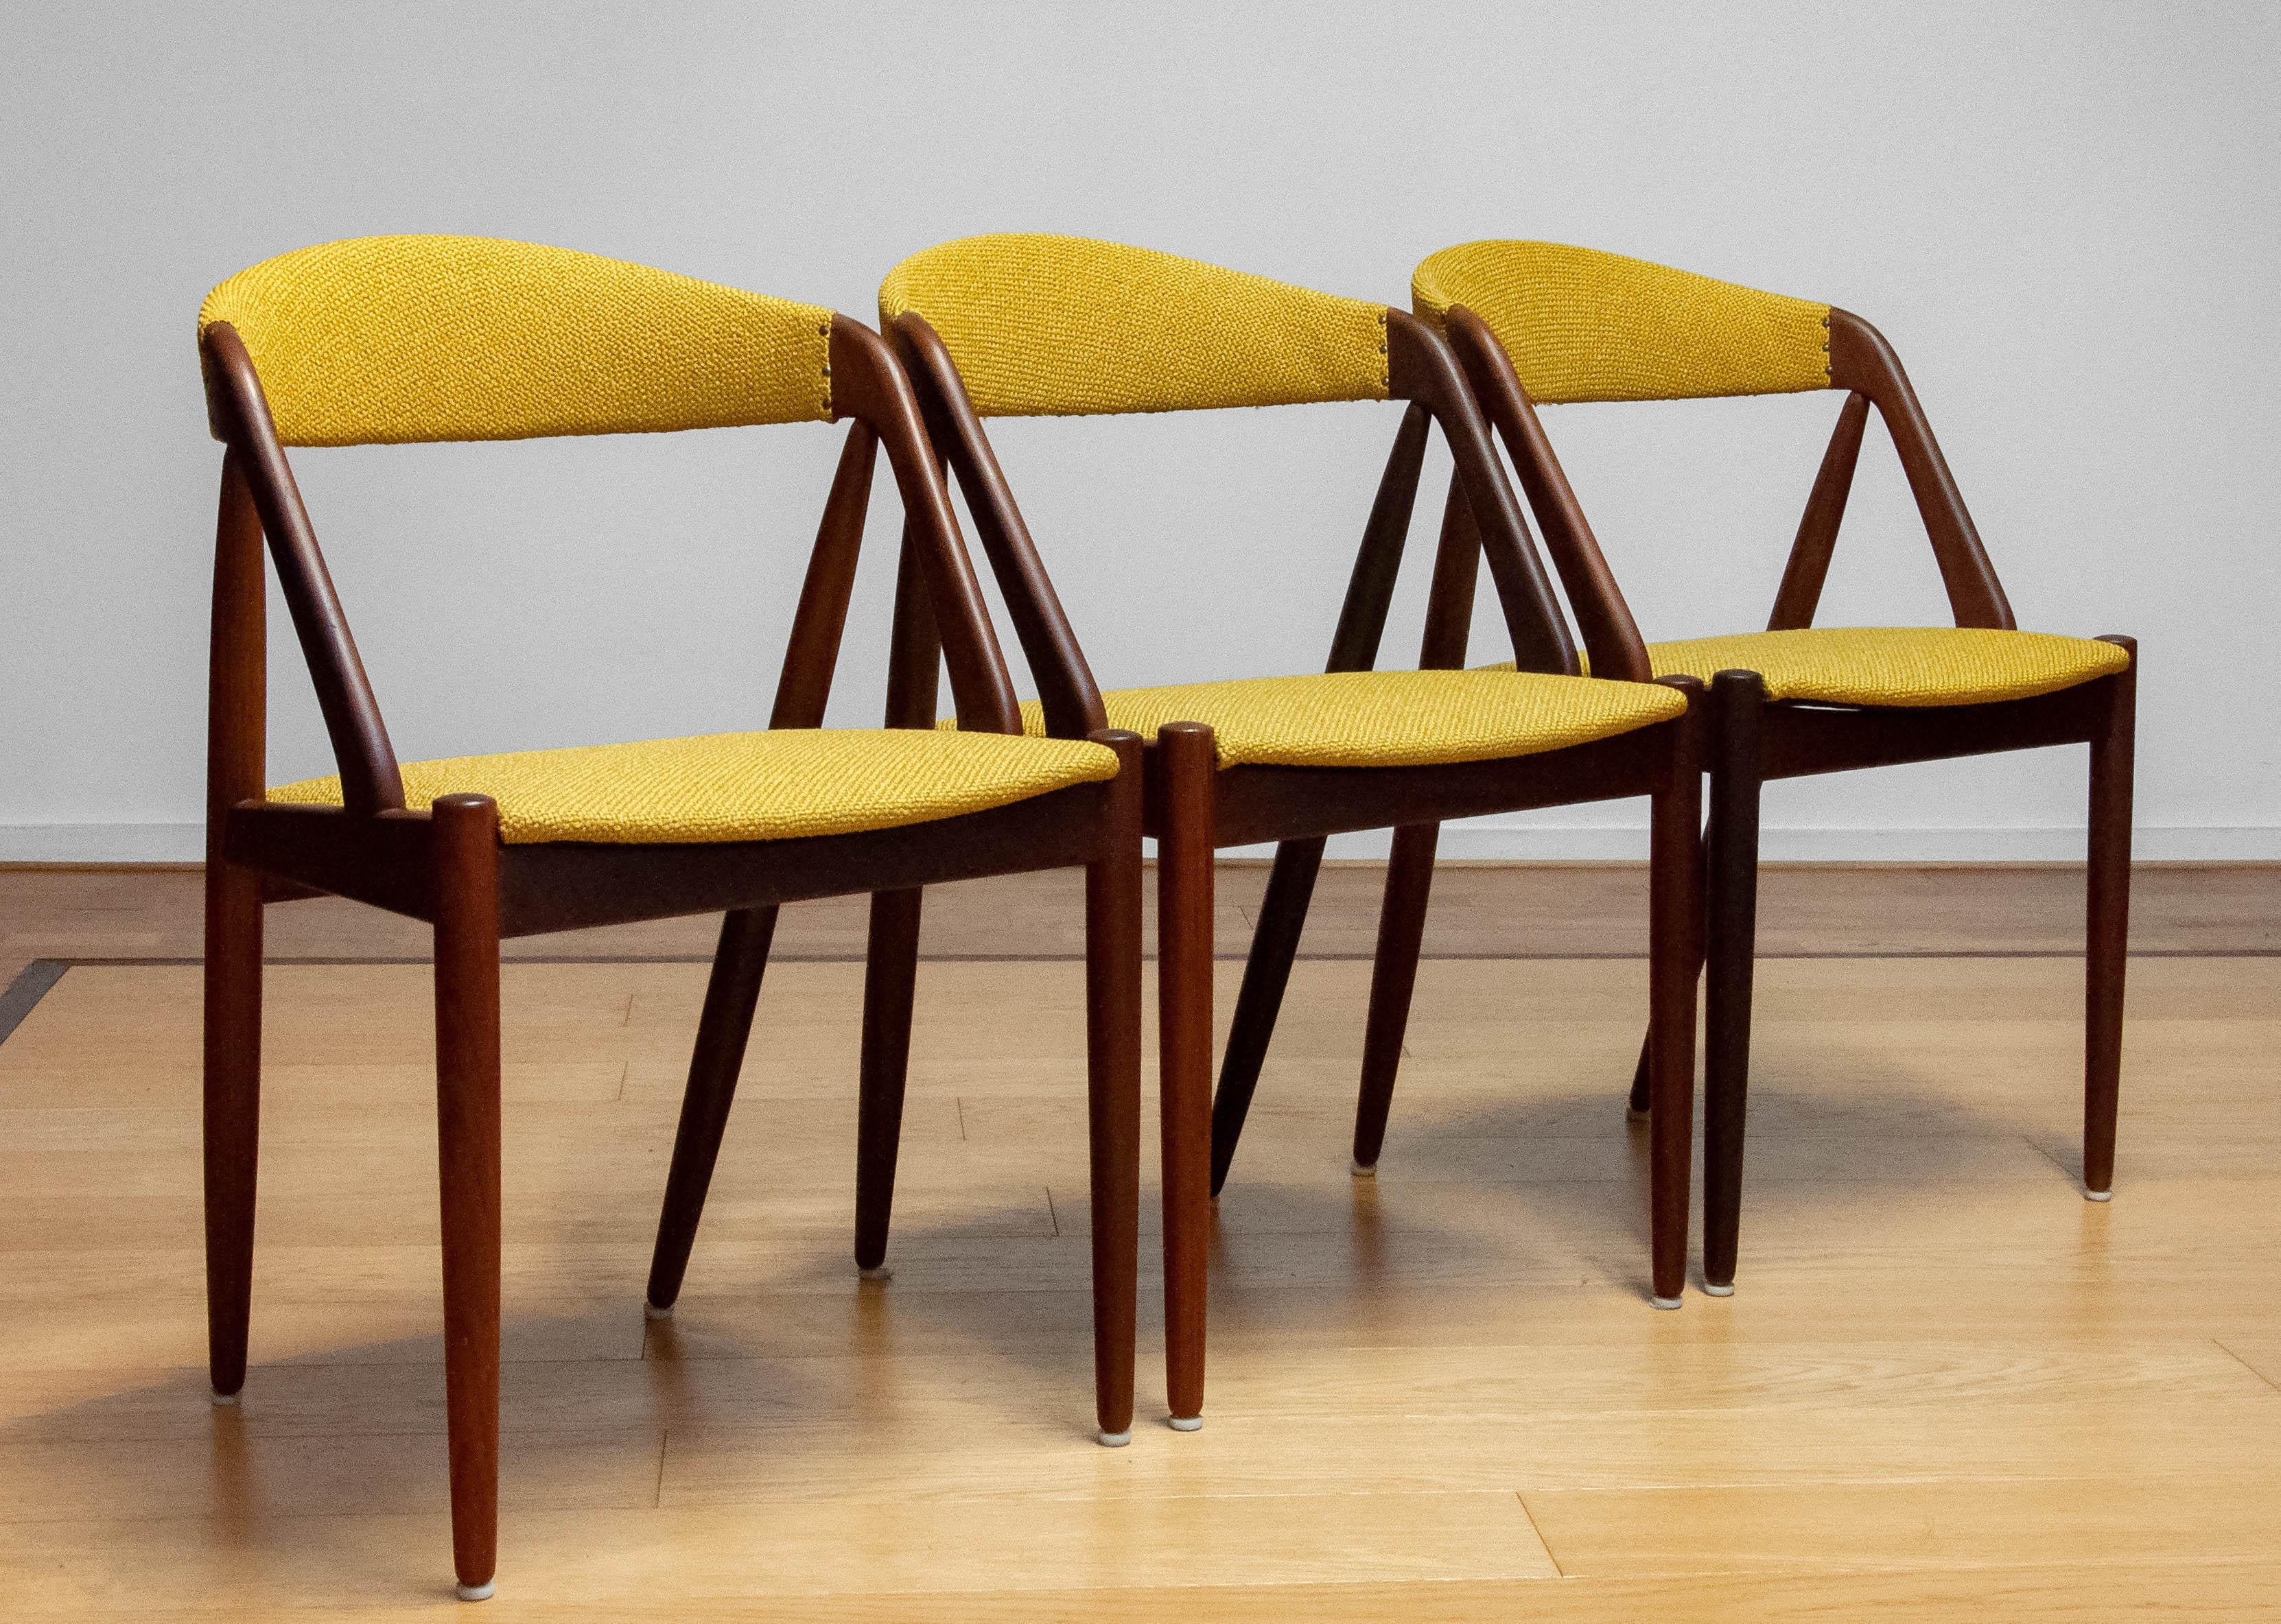 Magnifique chaise de salle à manger conçue par Kai Kristiansen pour Shou-Andersen Møbelfabrik au Danemark dans les années 1960.
Les chaises sont retapissées dans notre atelier avec le tissu ocre jaune actuel. Les châssis sont en teck et les chaises